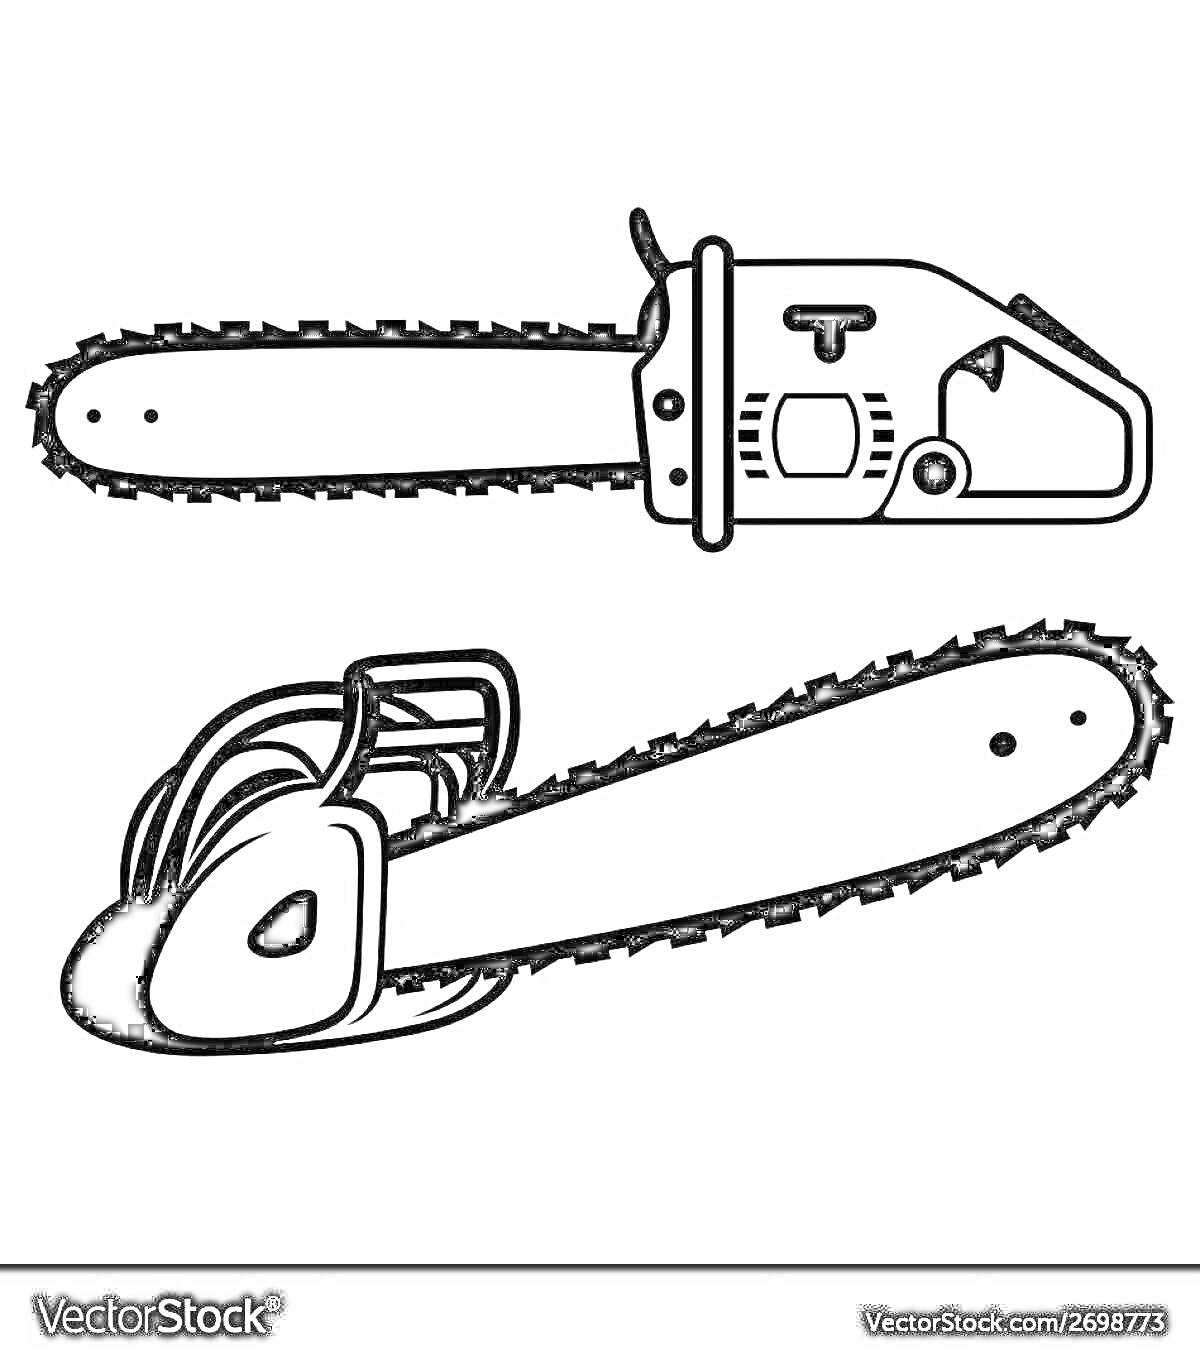 Две бензопилы - верхняя бензопила с видимым корпусом и ручкой, нижняя бензопила с видимыми рукоятками и цепью -